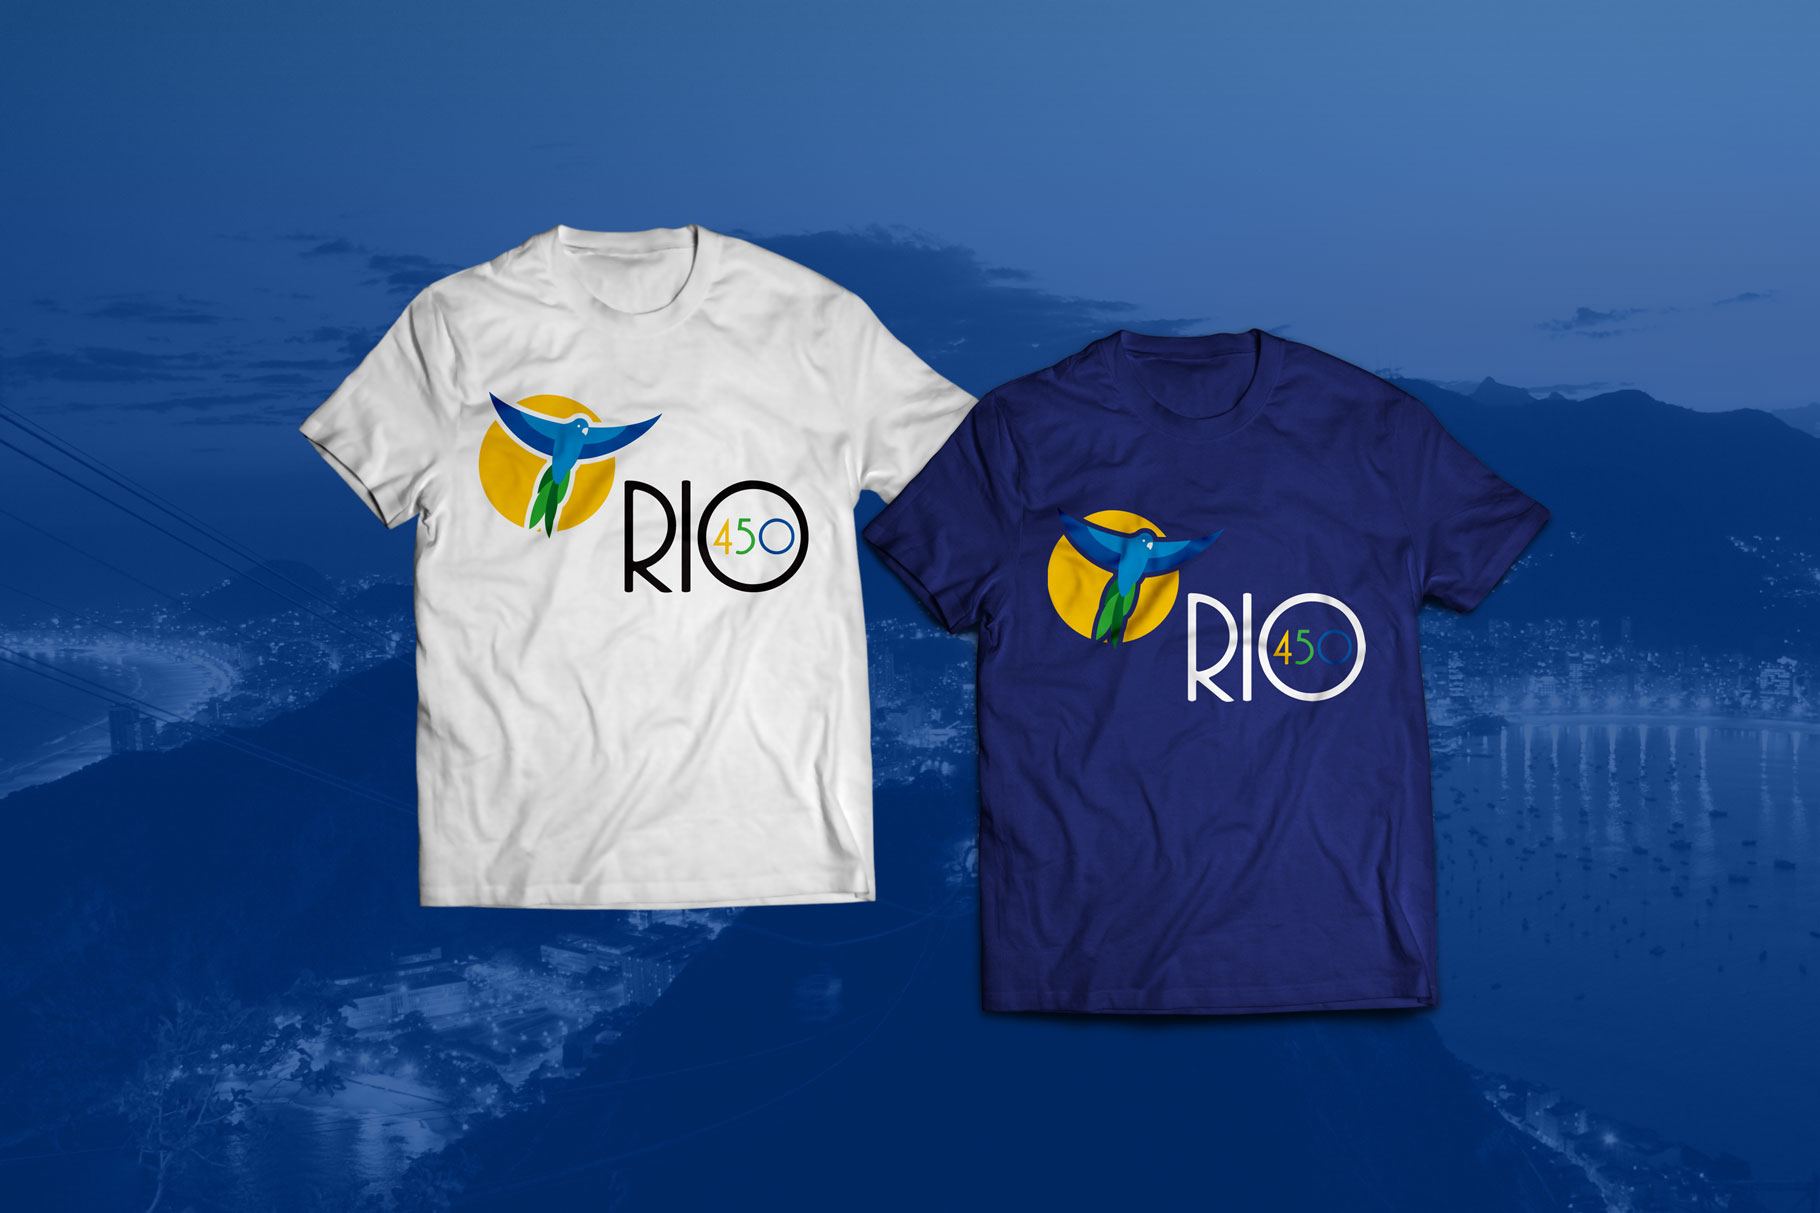 RIO 450 T-Shirt Design